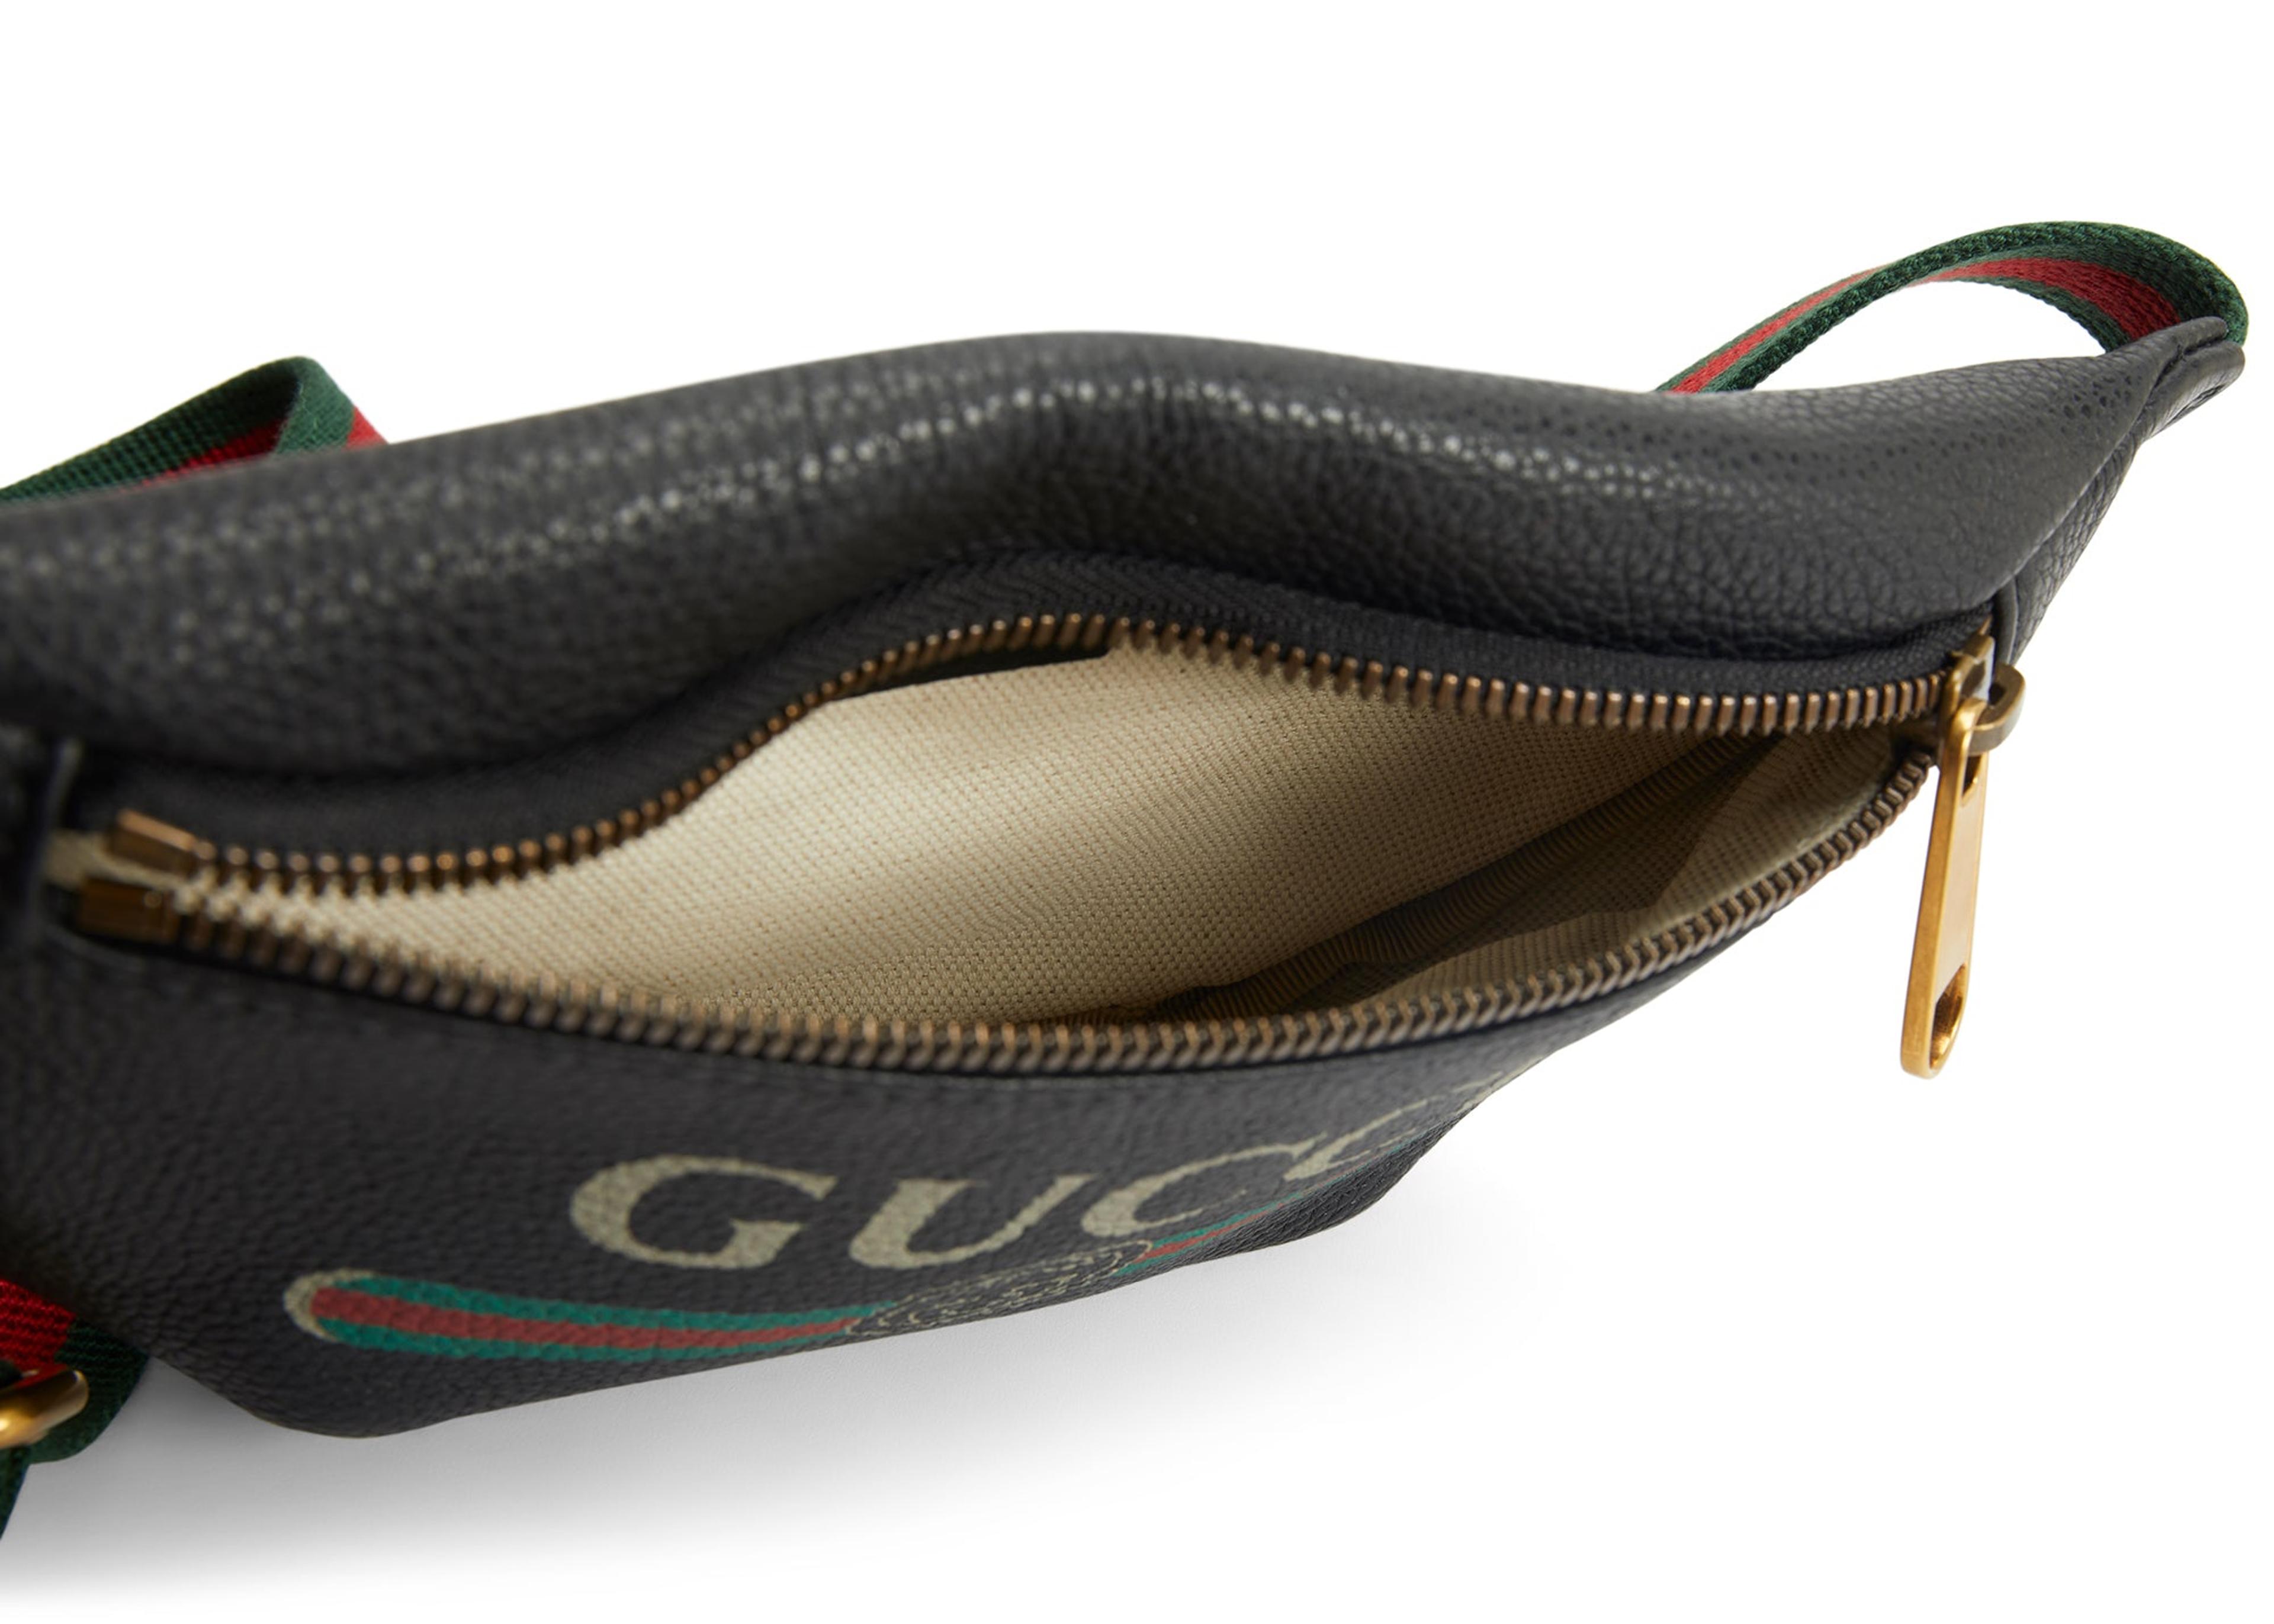 gucci belt bag vintage black